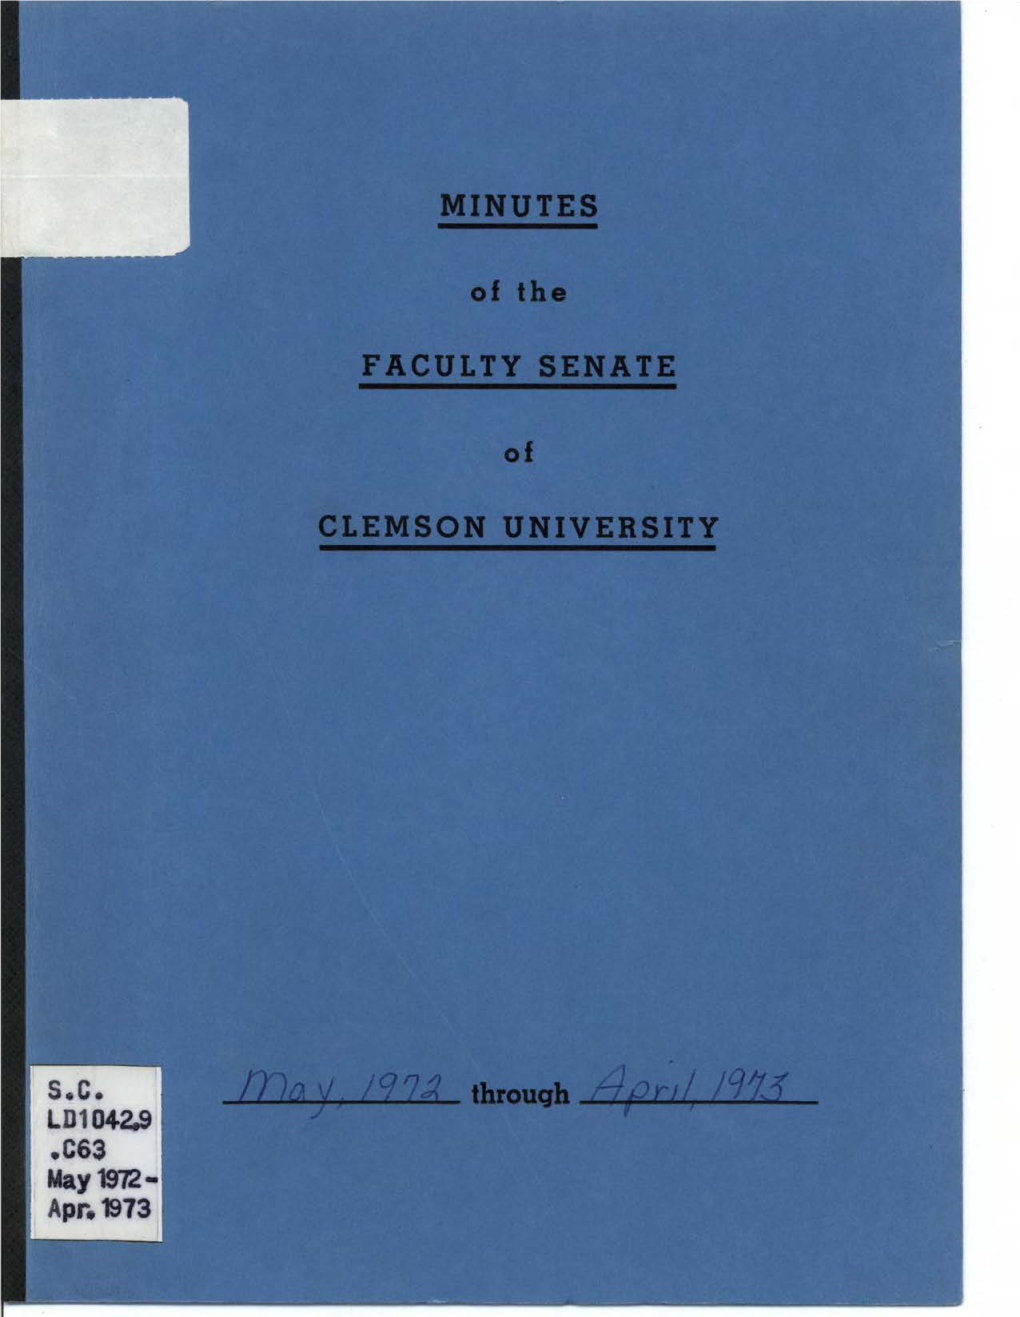 Faculty Senate Minutes, May 1972